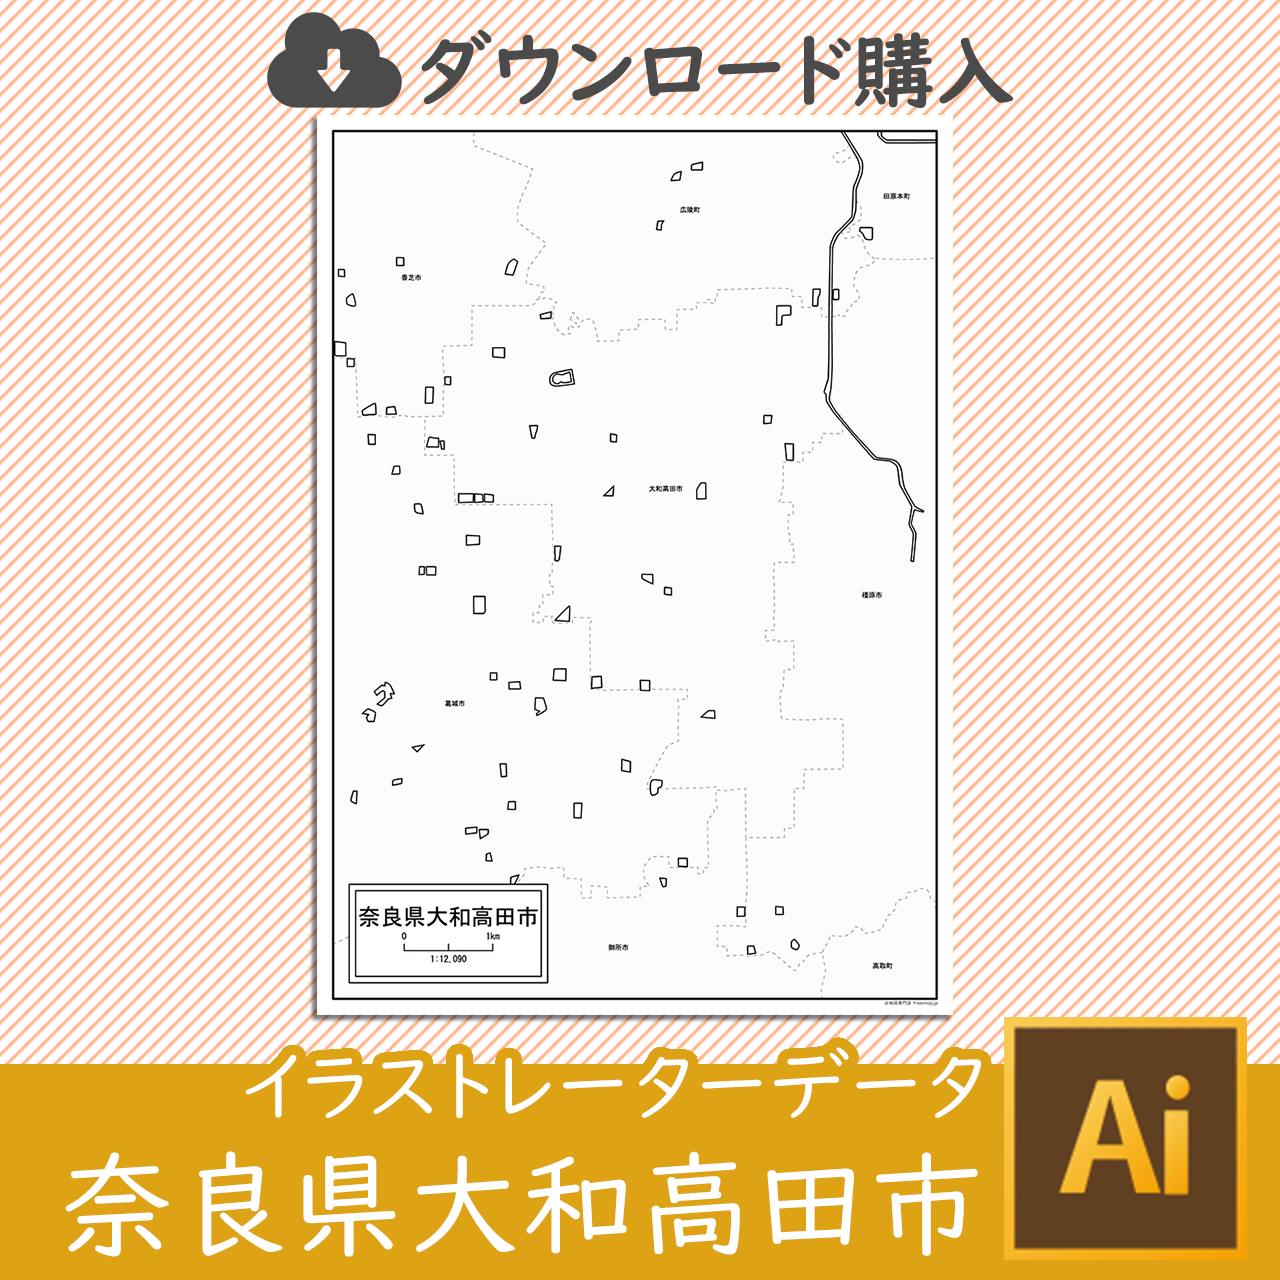 大和高田市のaiデータのサムネイル画像